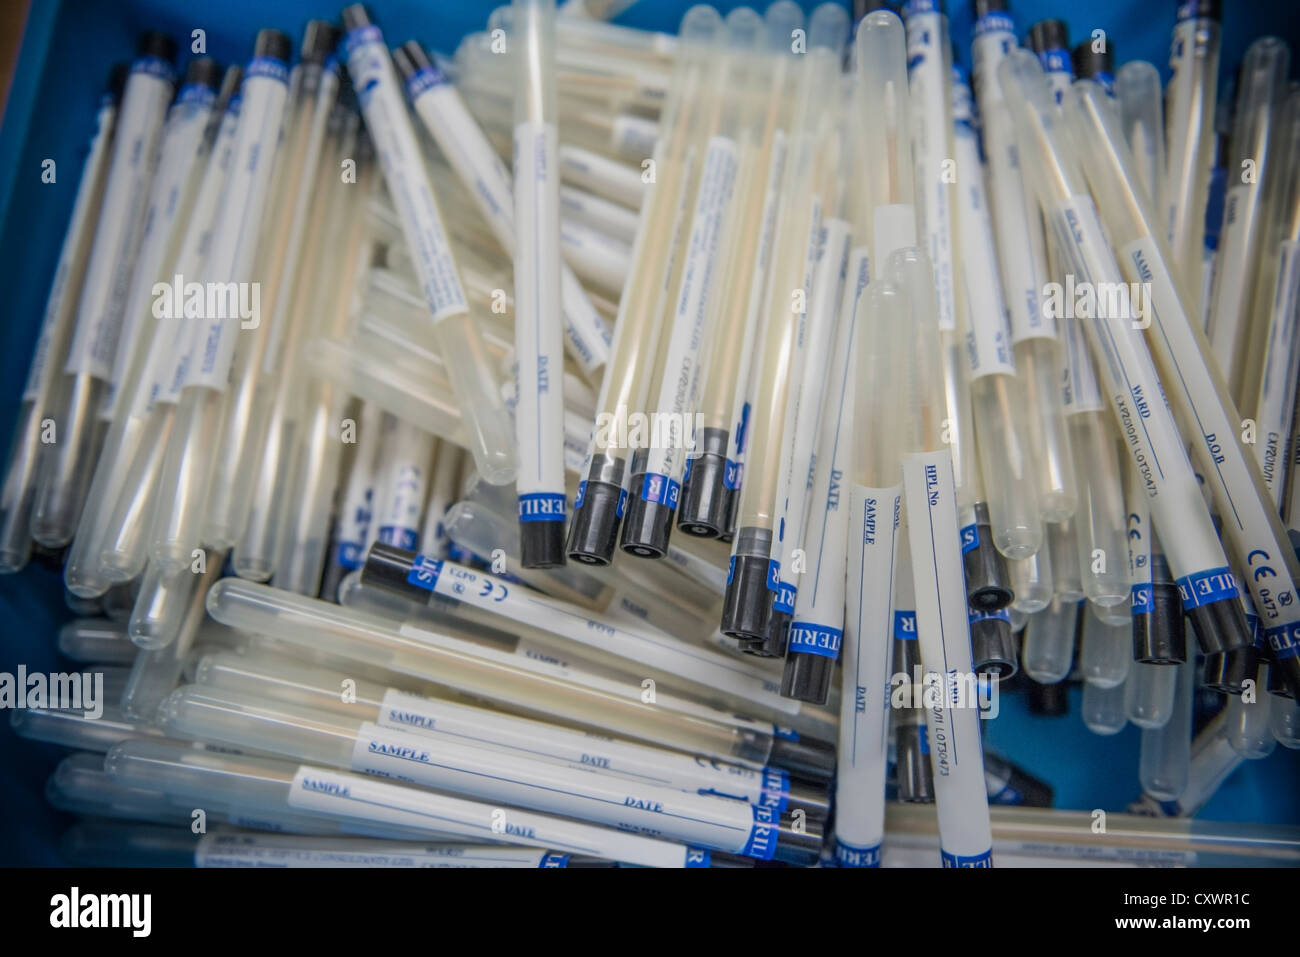 Tas de tubes de prélèvement d'ADN médico-légale Banque D'Images